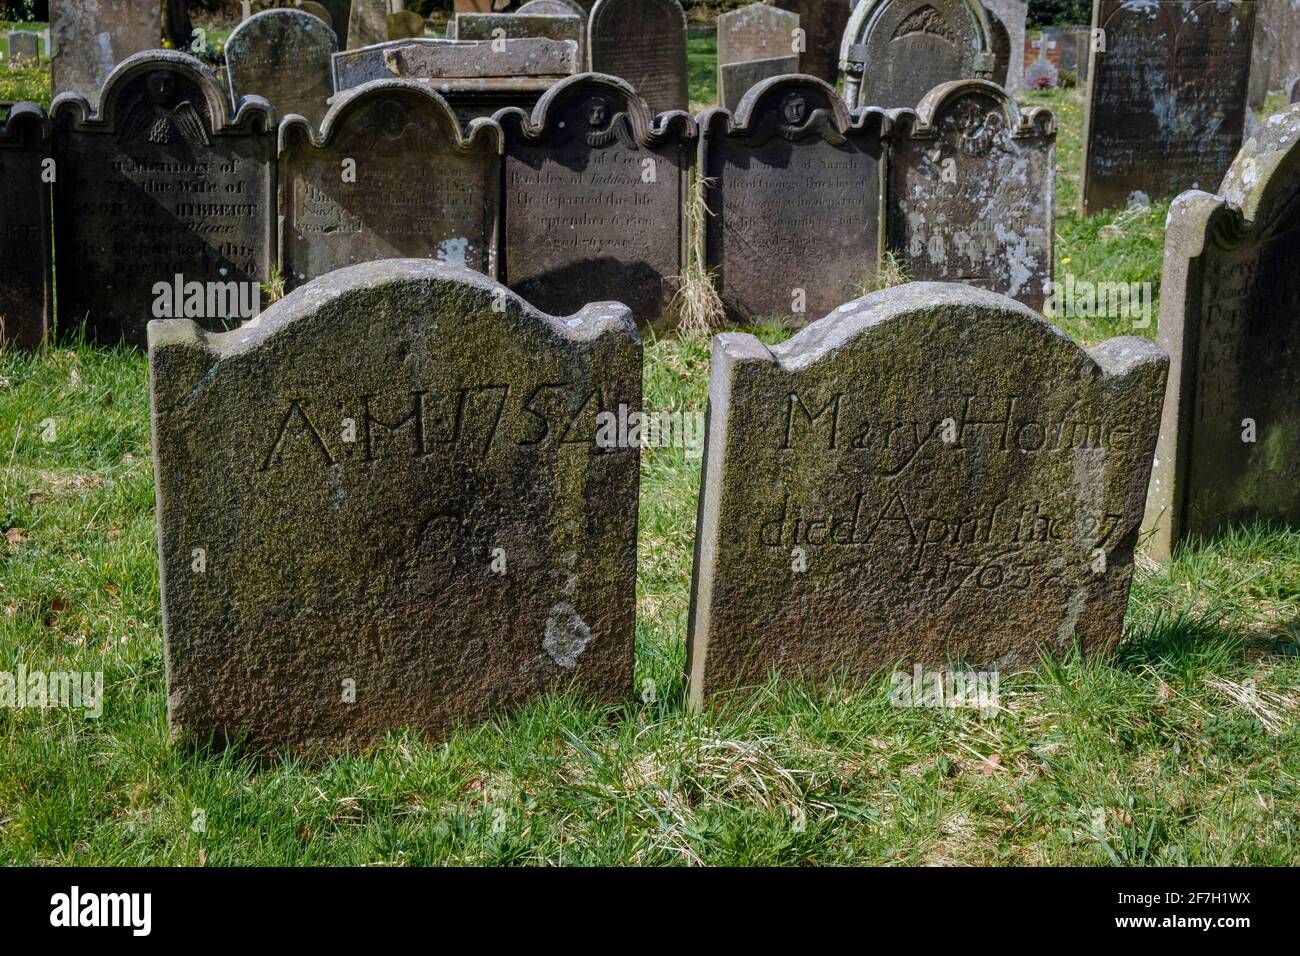 Pierres tombales du XVIIIe siècle dans le cimetière de l'église Saint-Michel et All Angels, Taddington, parc national du Peak District, Derbyshire Banque D'Images